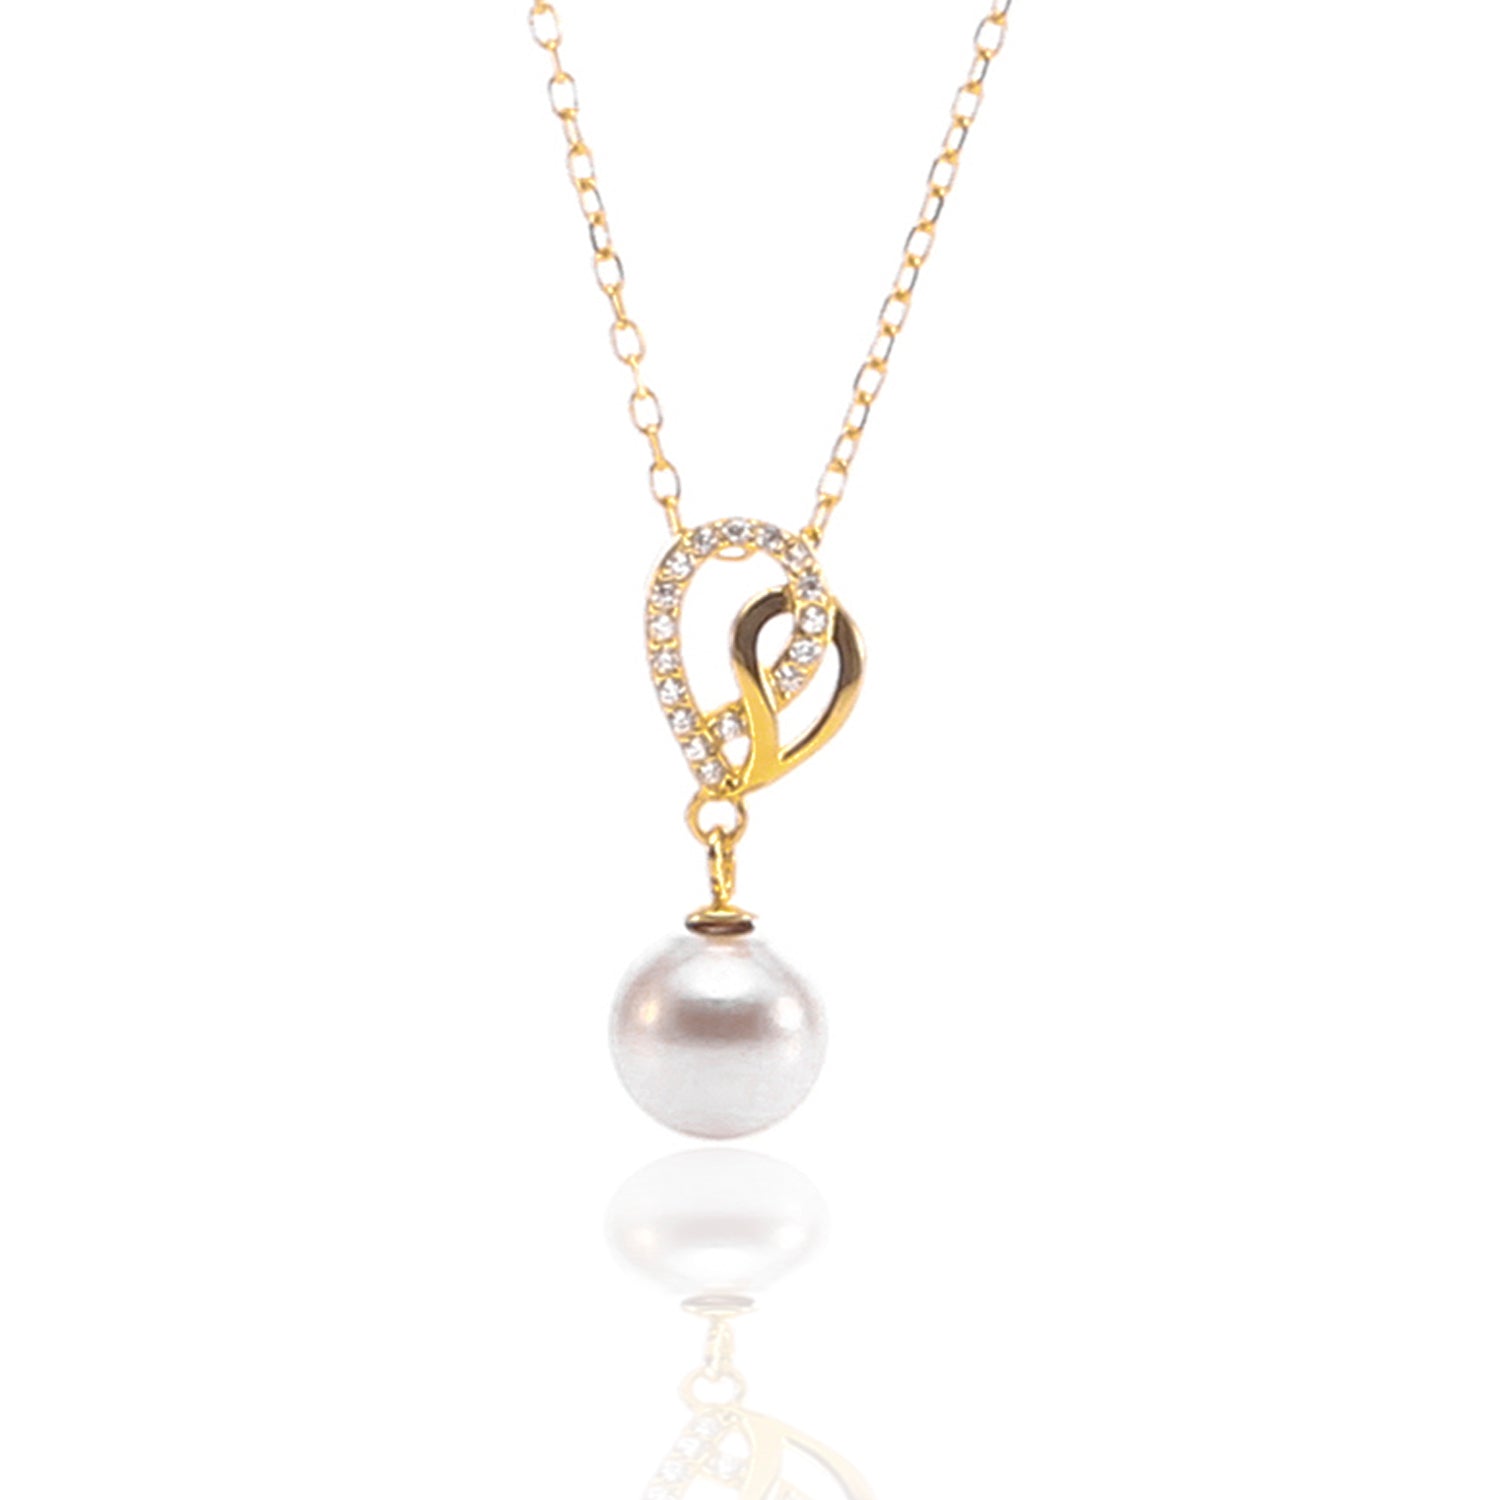 Collar de Corazon y Perlas ~ Heart and Pearl Necklace Jewelry